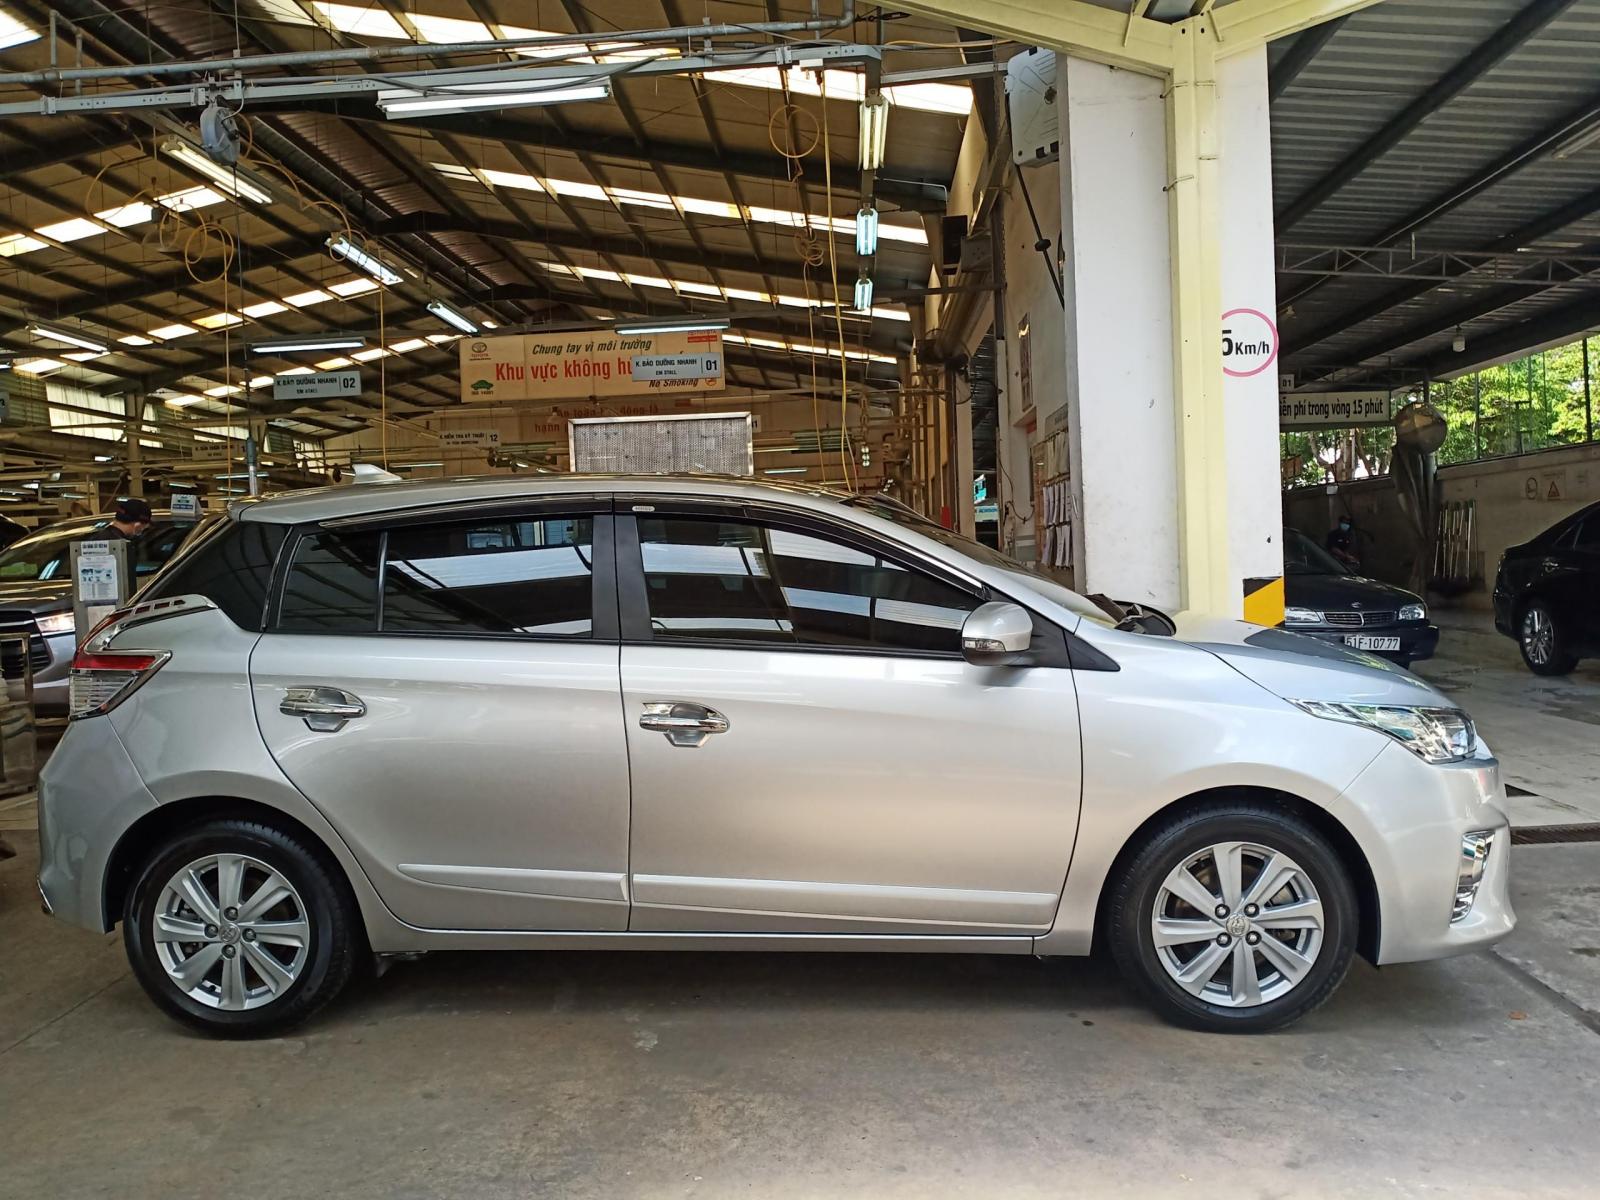 Toyota Yaris 2015 - Yaris 2015 chính hãng nhập Thái, còn kèm nhiều khuyến mãi giảm giá sốc